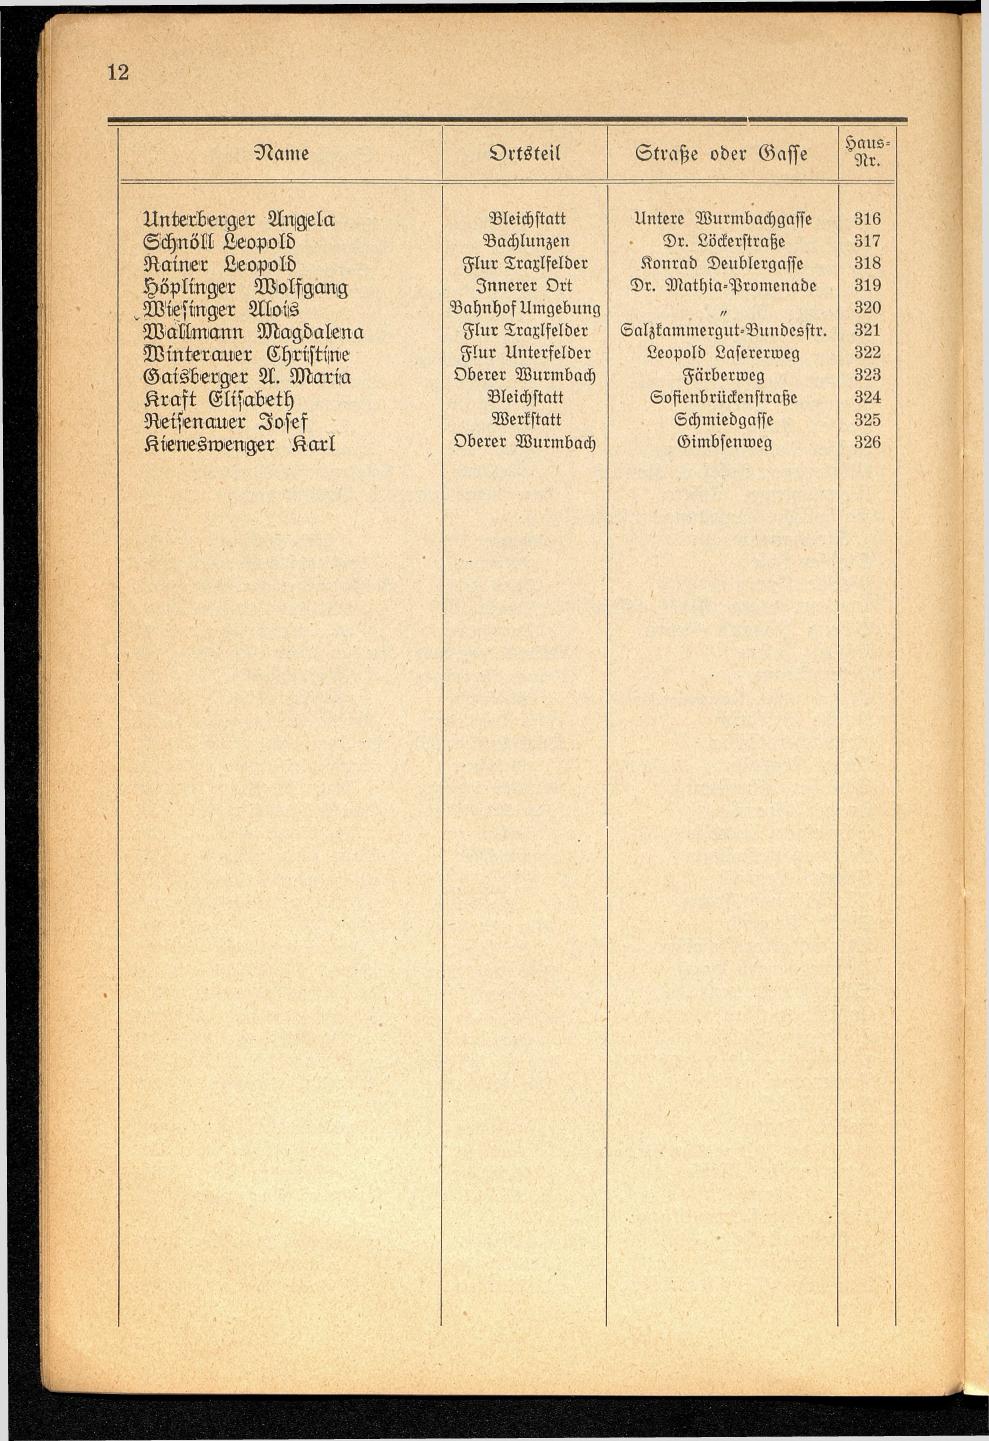 Häuser-Verzeichnis der Gemeinde Goisern nach dem Stande von November 1937 - Seite 14